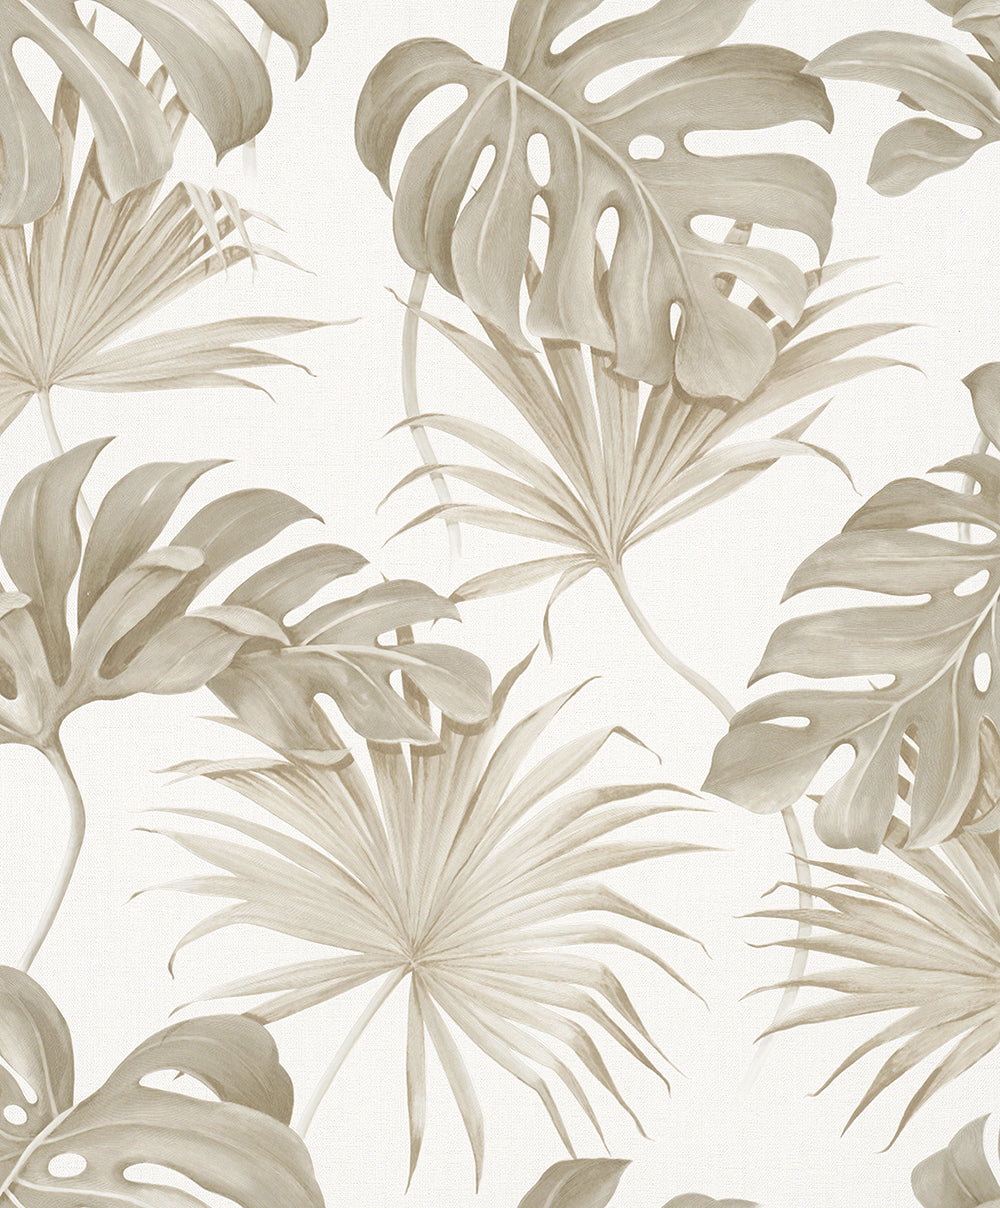 Schoner Wohnen New Spirit - Palm Leaves botanical wallpaper Marburg Roll Beige  32744